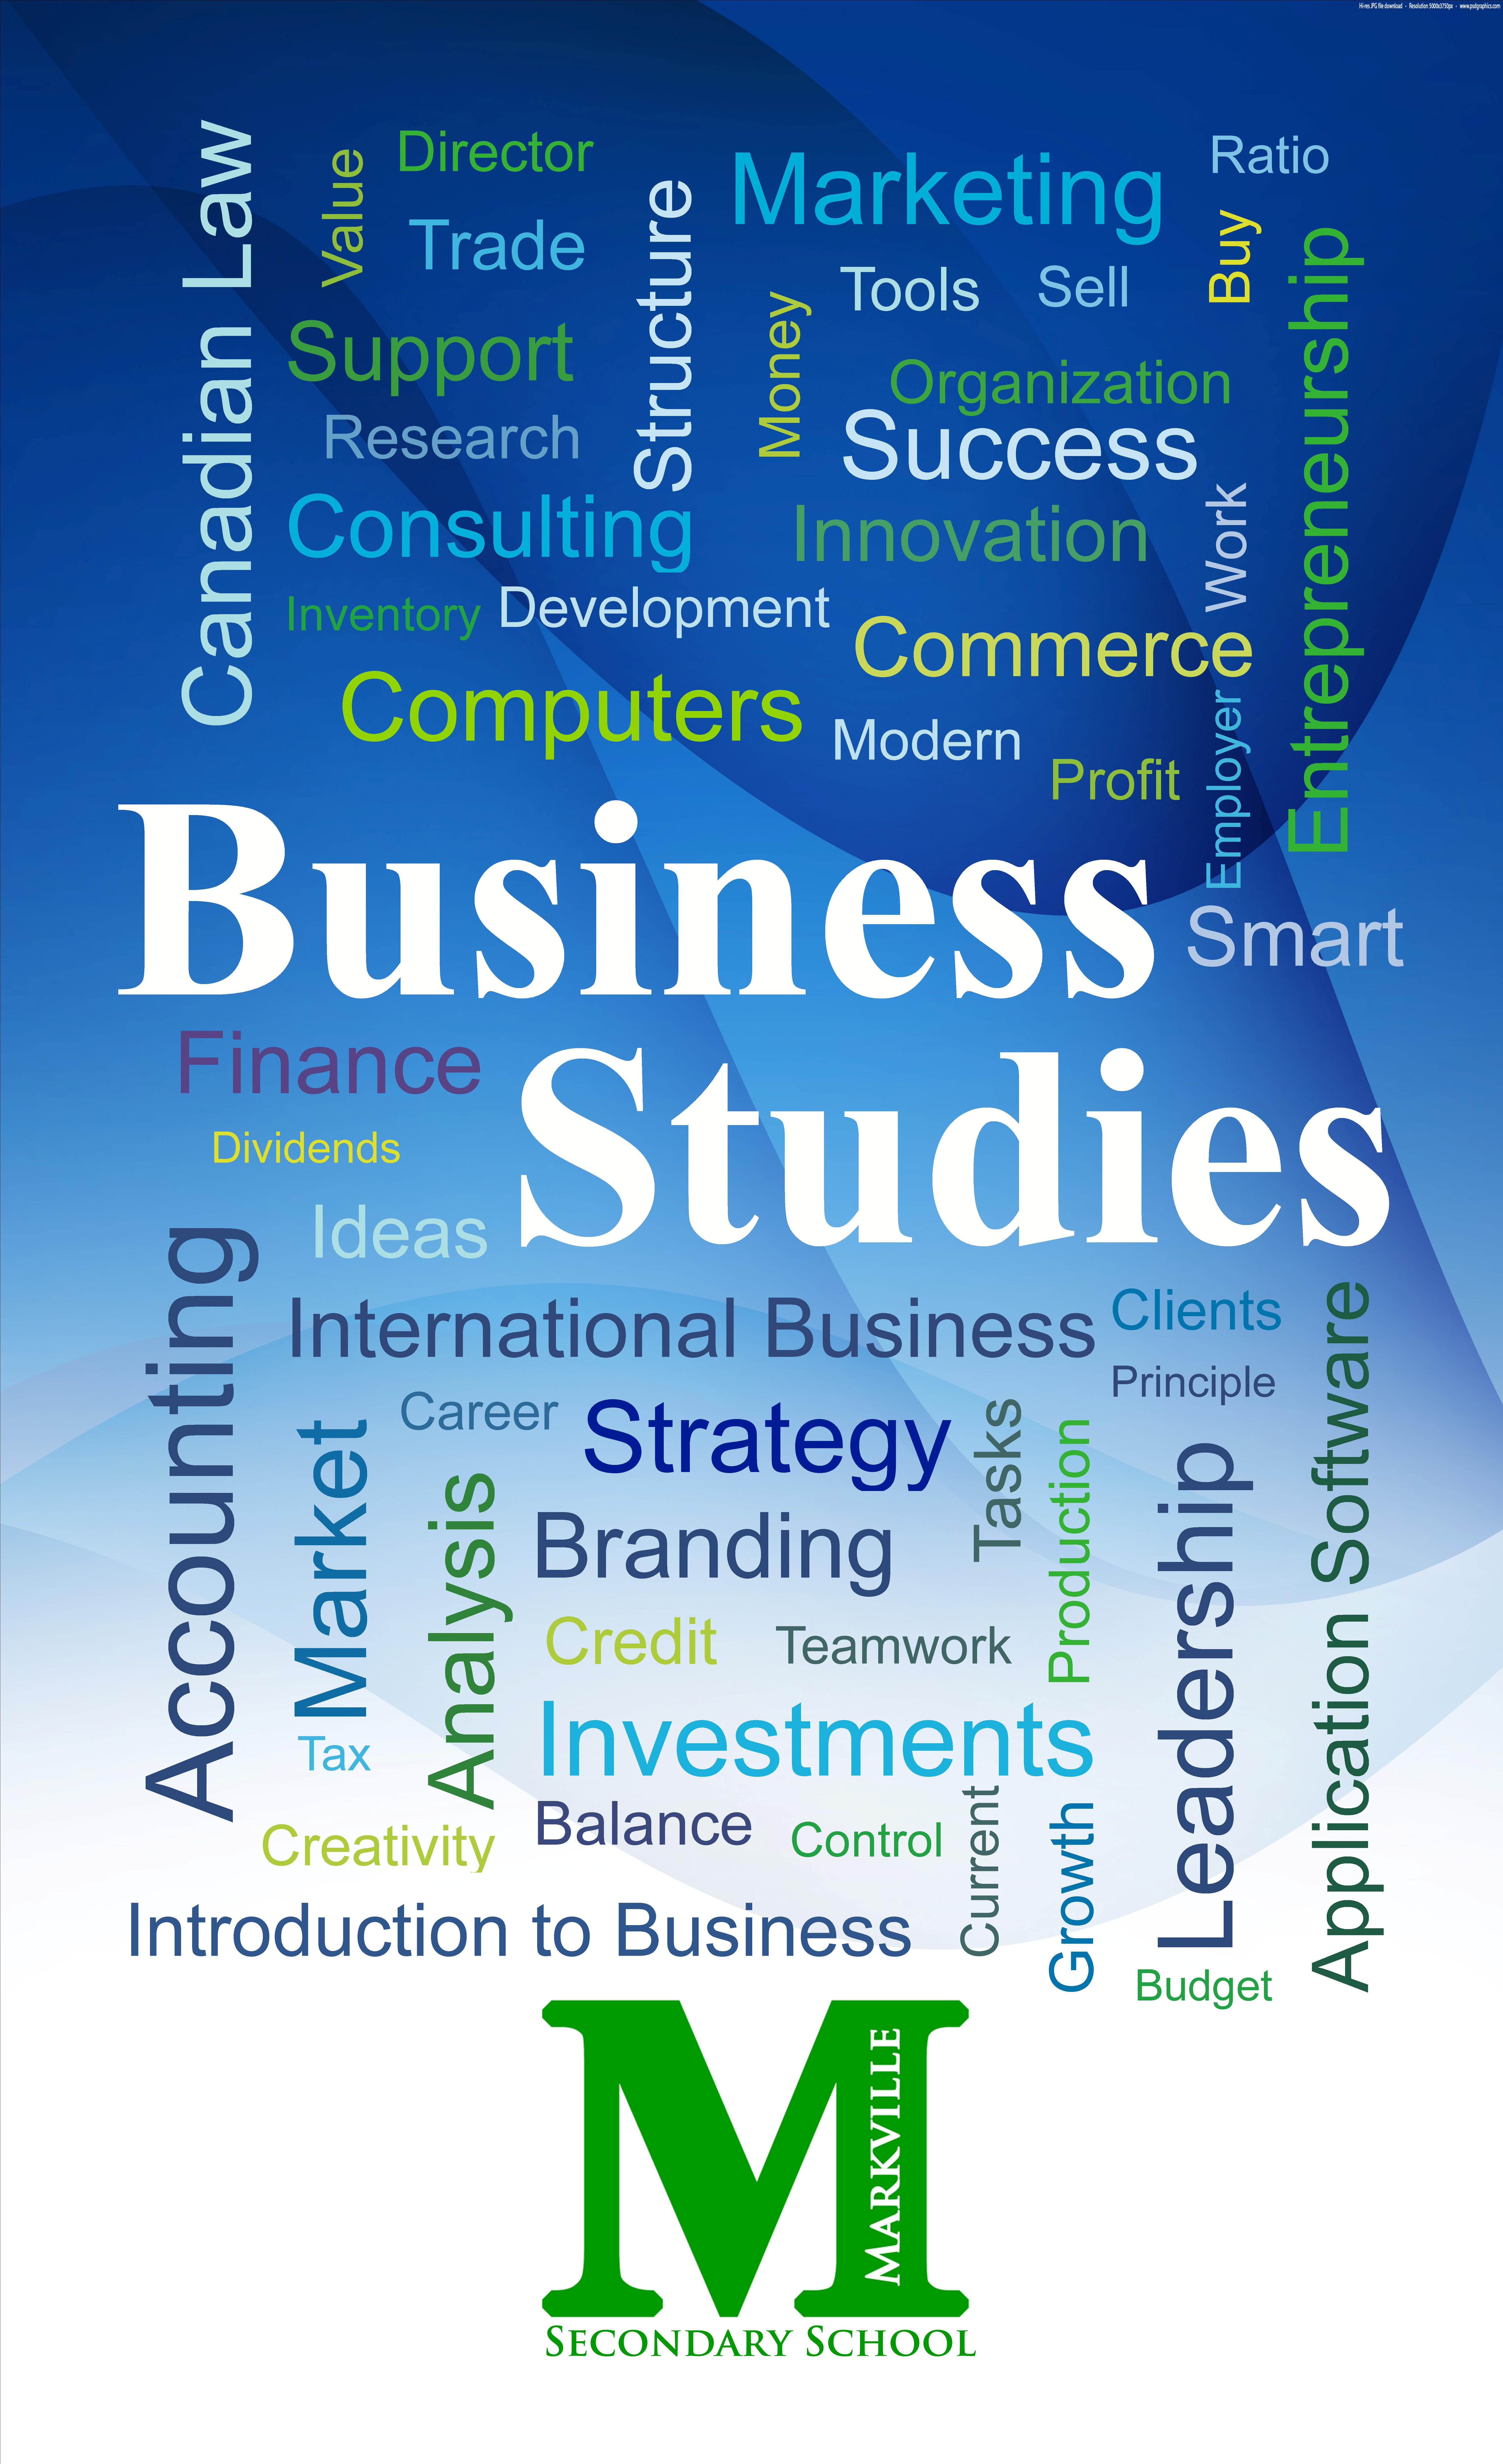 Business Studies Banner.jpg